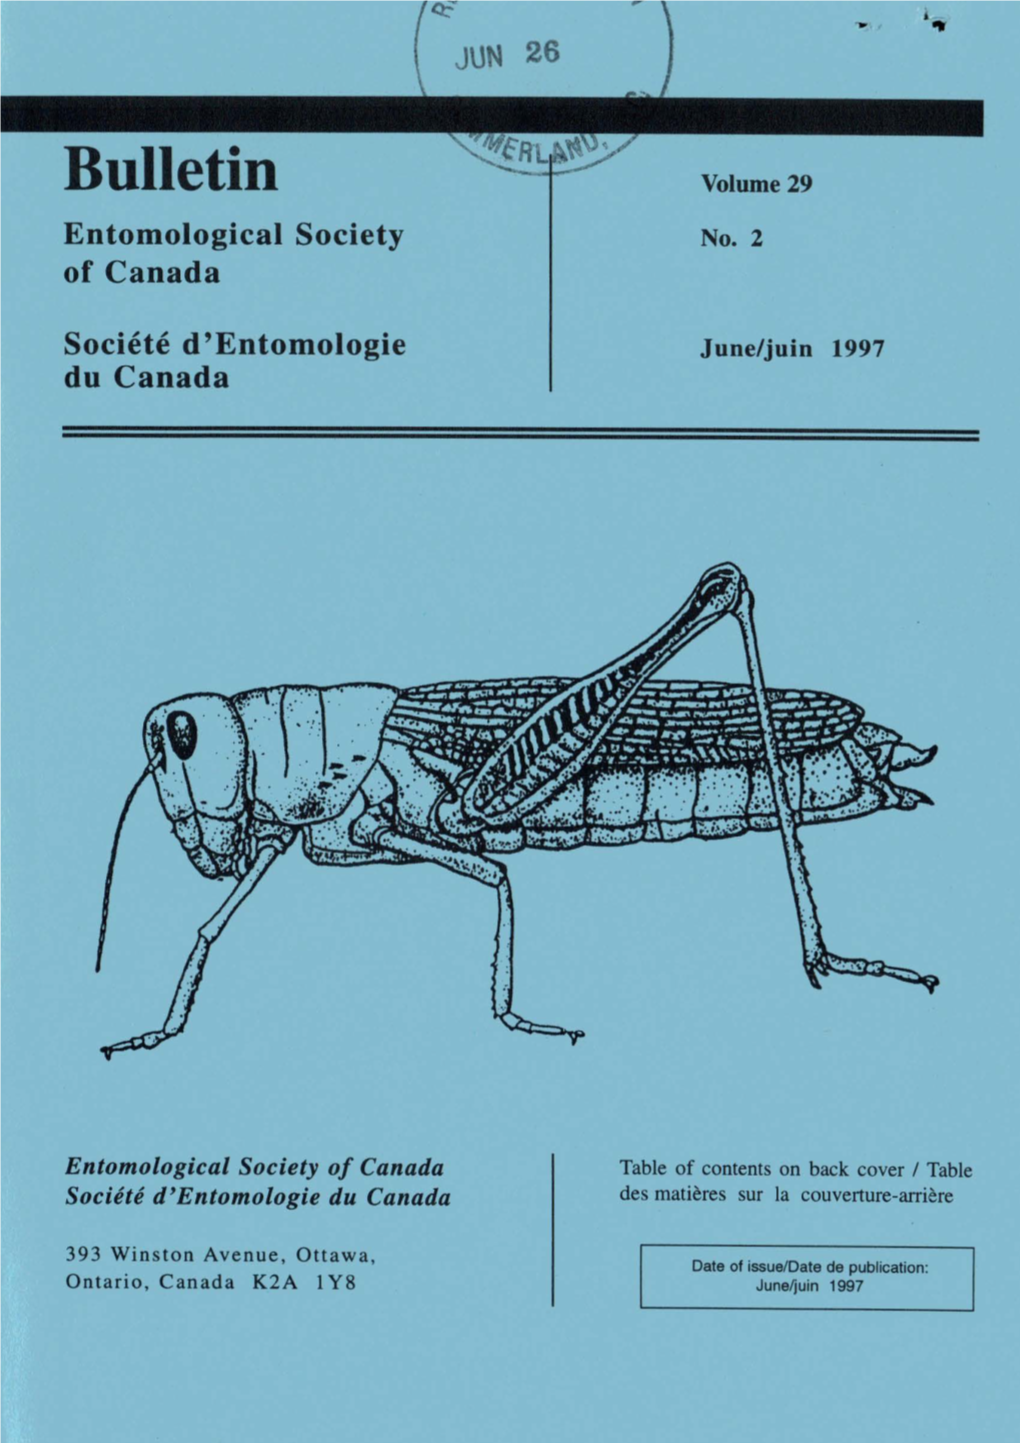 Entomological Society of Canada Societe D'entomologie Du Canada